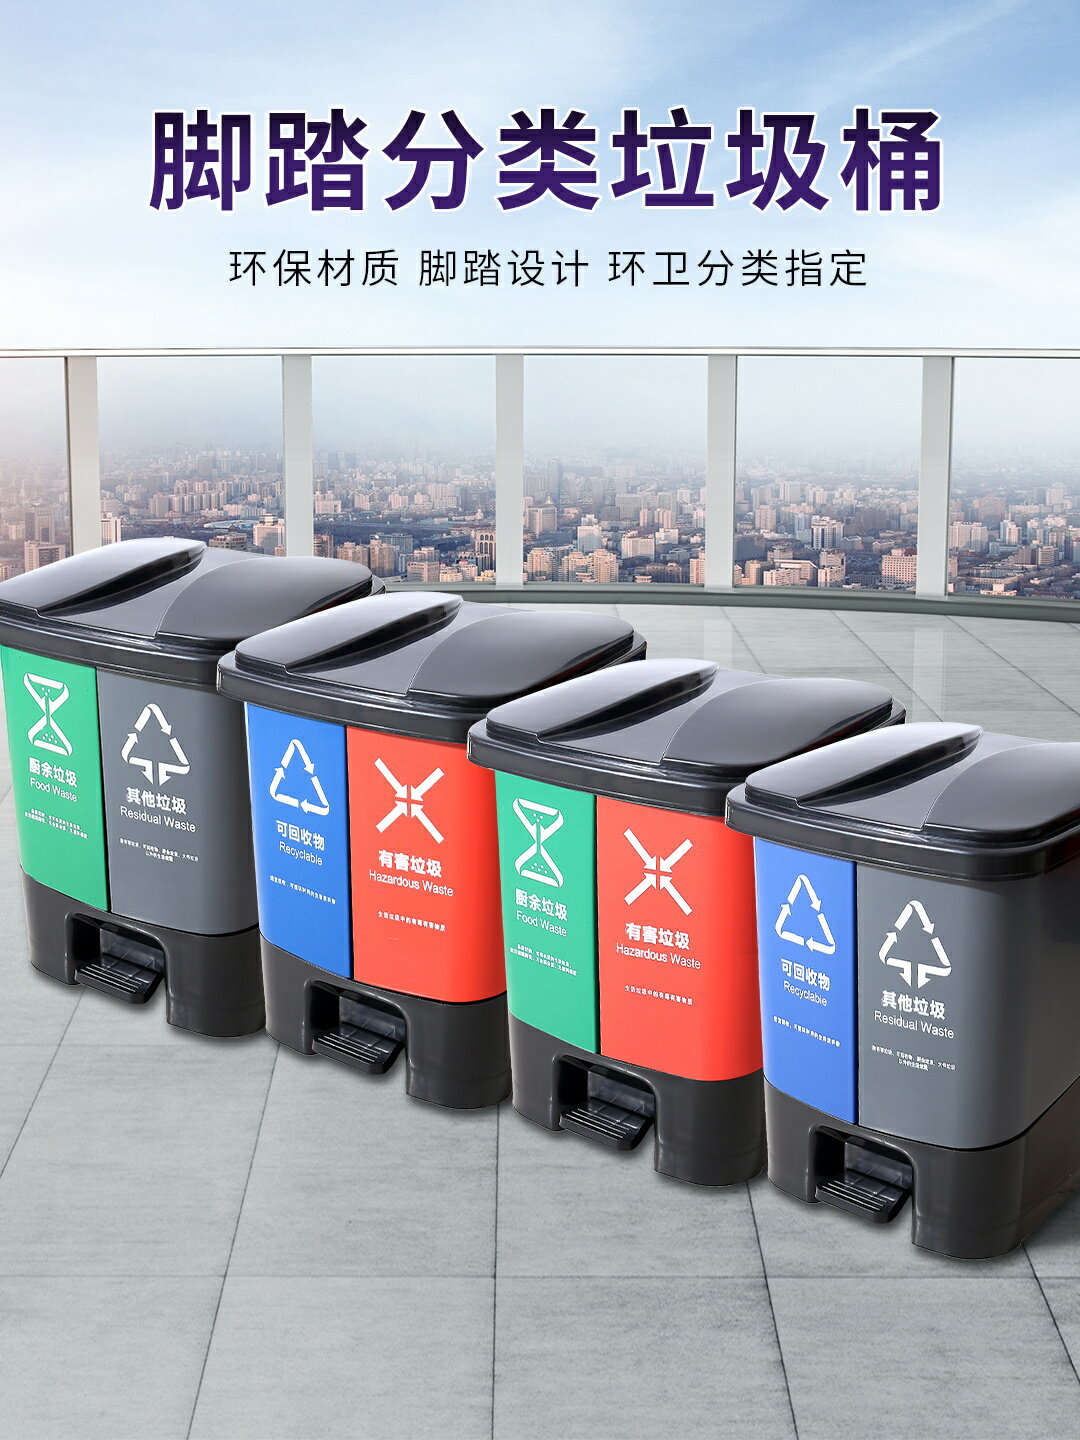 戶外垃圾桶 垃圾分類垃圾桶家用公共場合四分類一體大號商用生活戶外辦公室用【MJ191561】